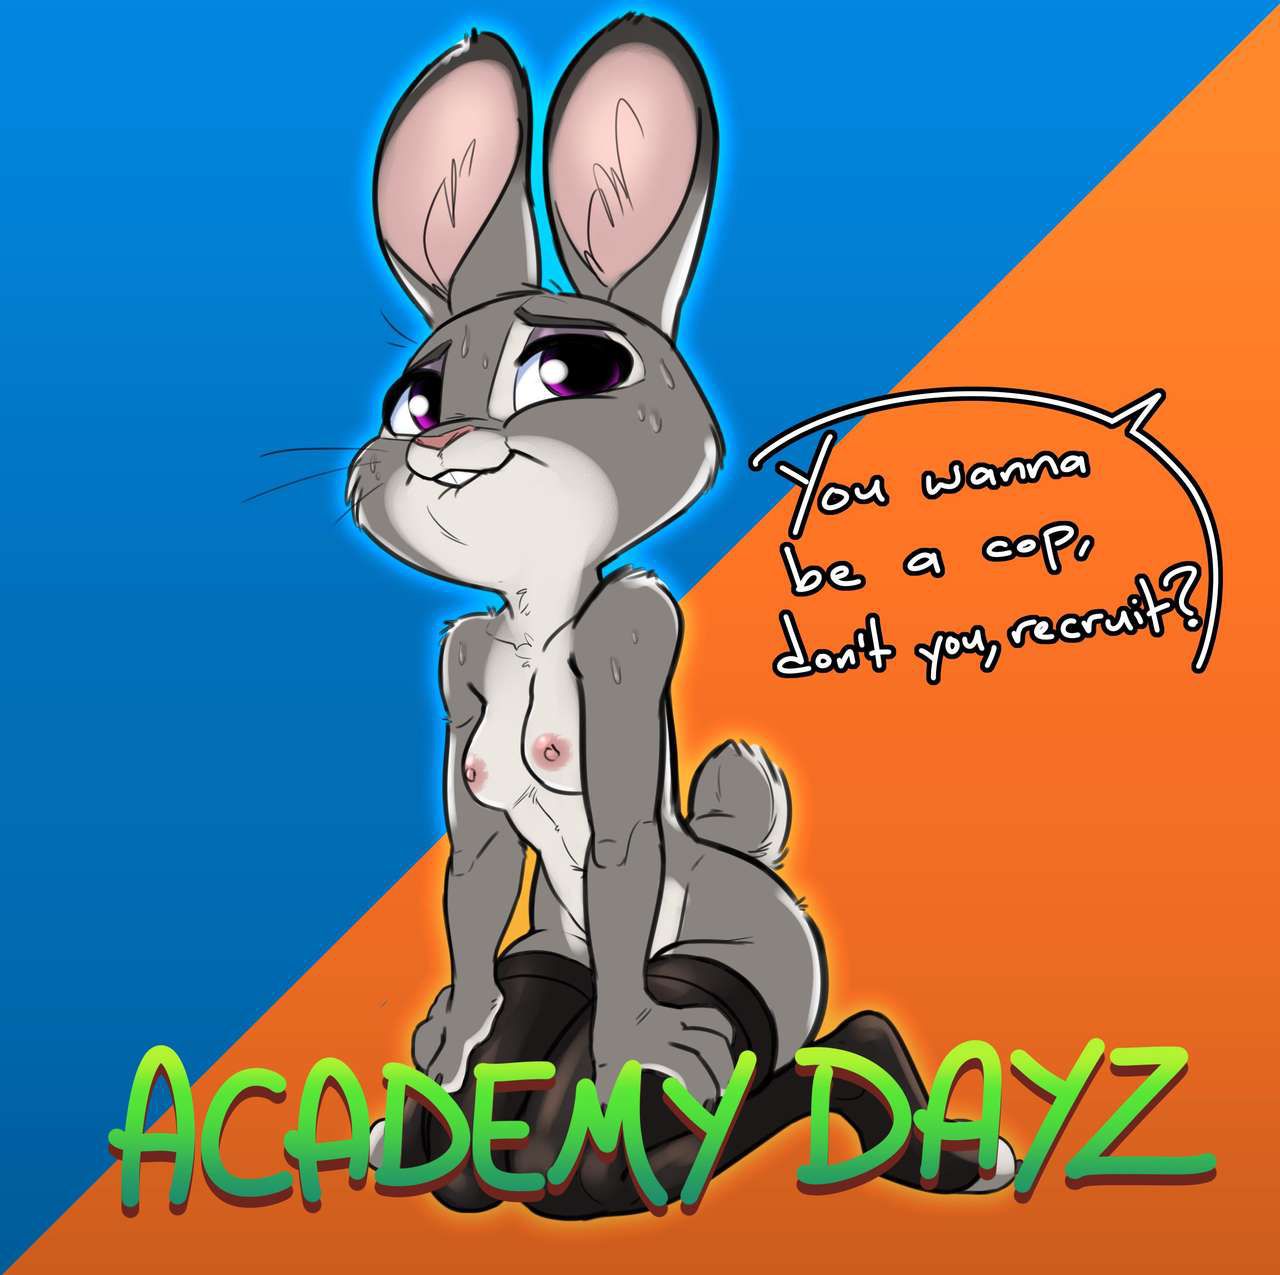 [Siroc] Academy Dayz (Zootopia) 1